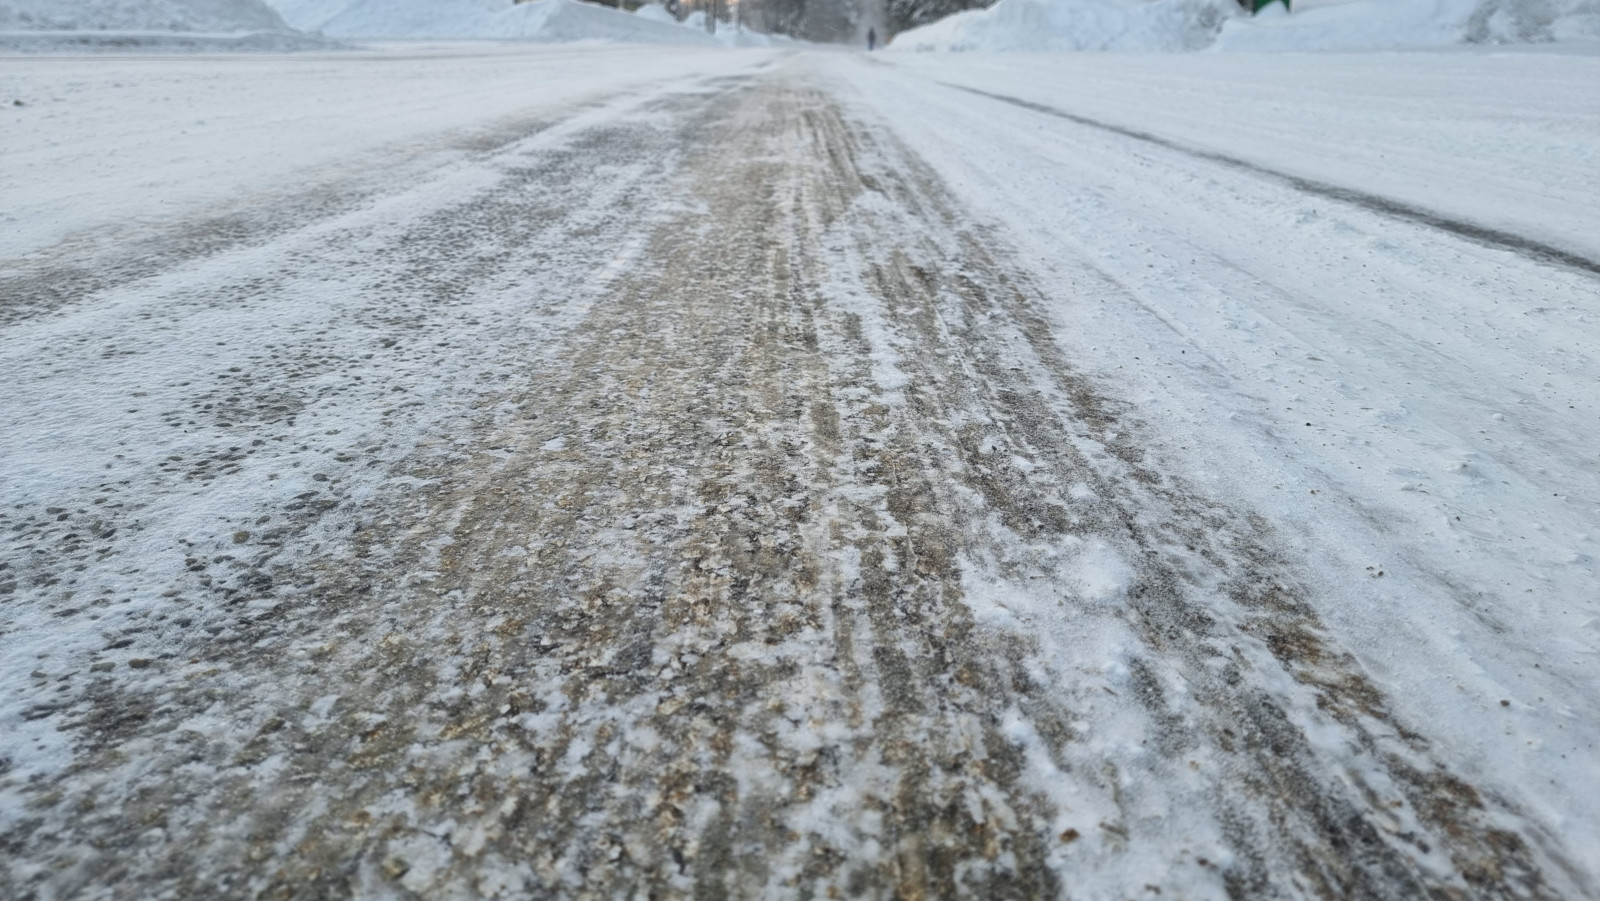 Vollvereiste Straßen sind in Lappland Standard.